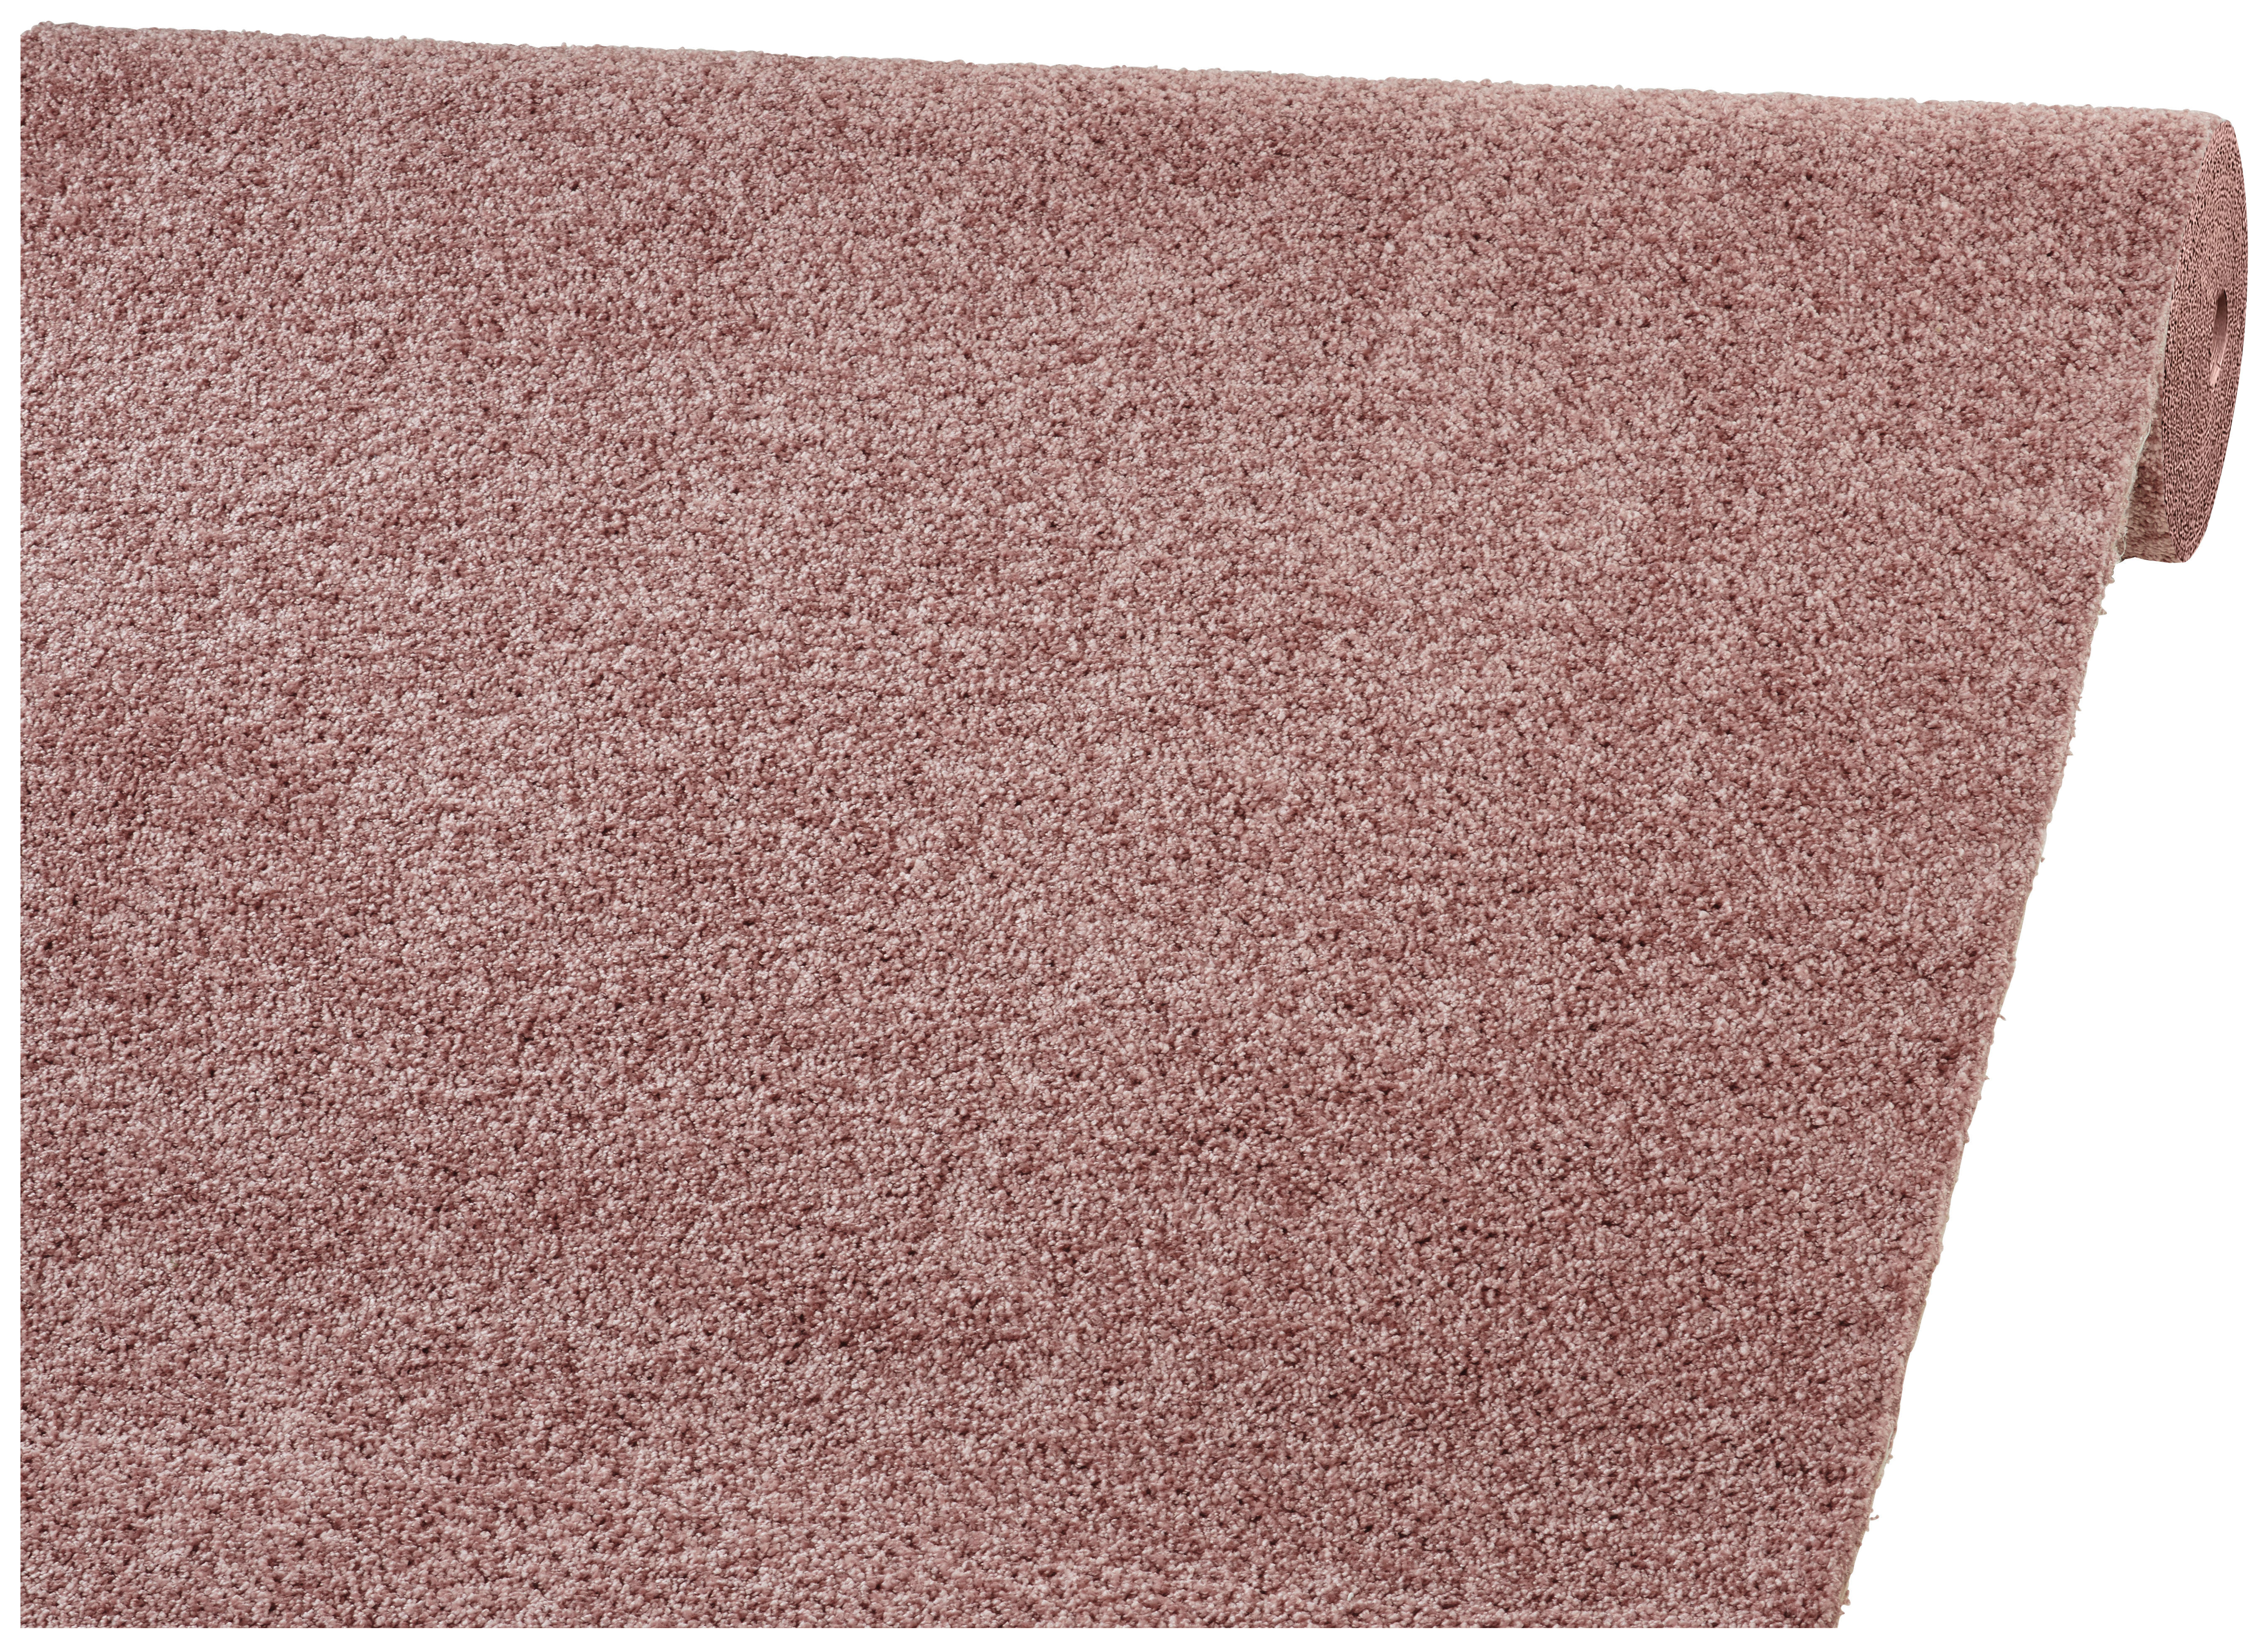 Teppichboden pink - Die ausgezeichnetesten Teppichboden pink unter die Lupe genommen!